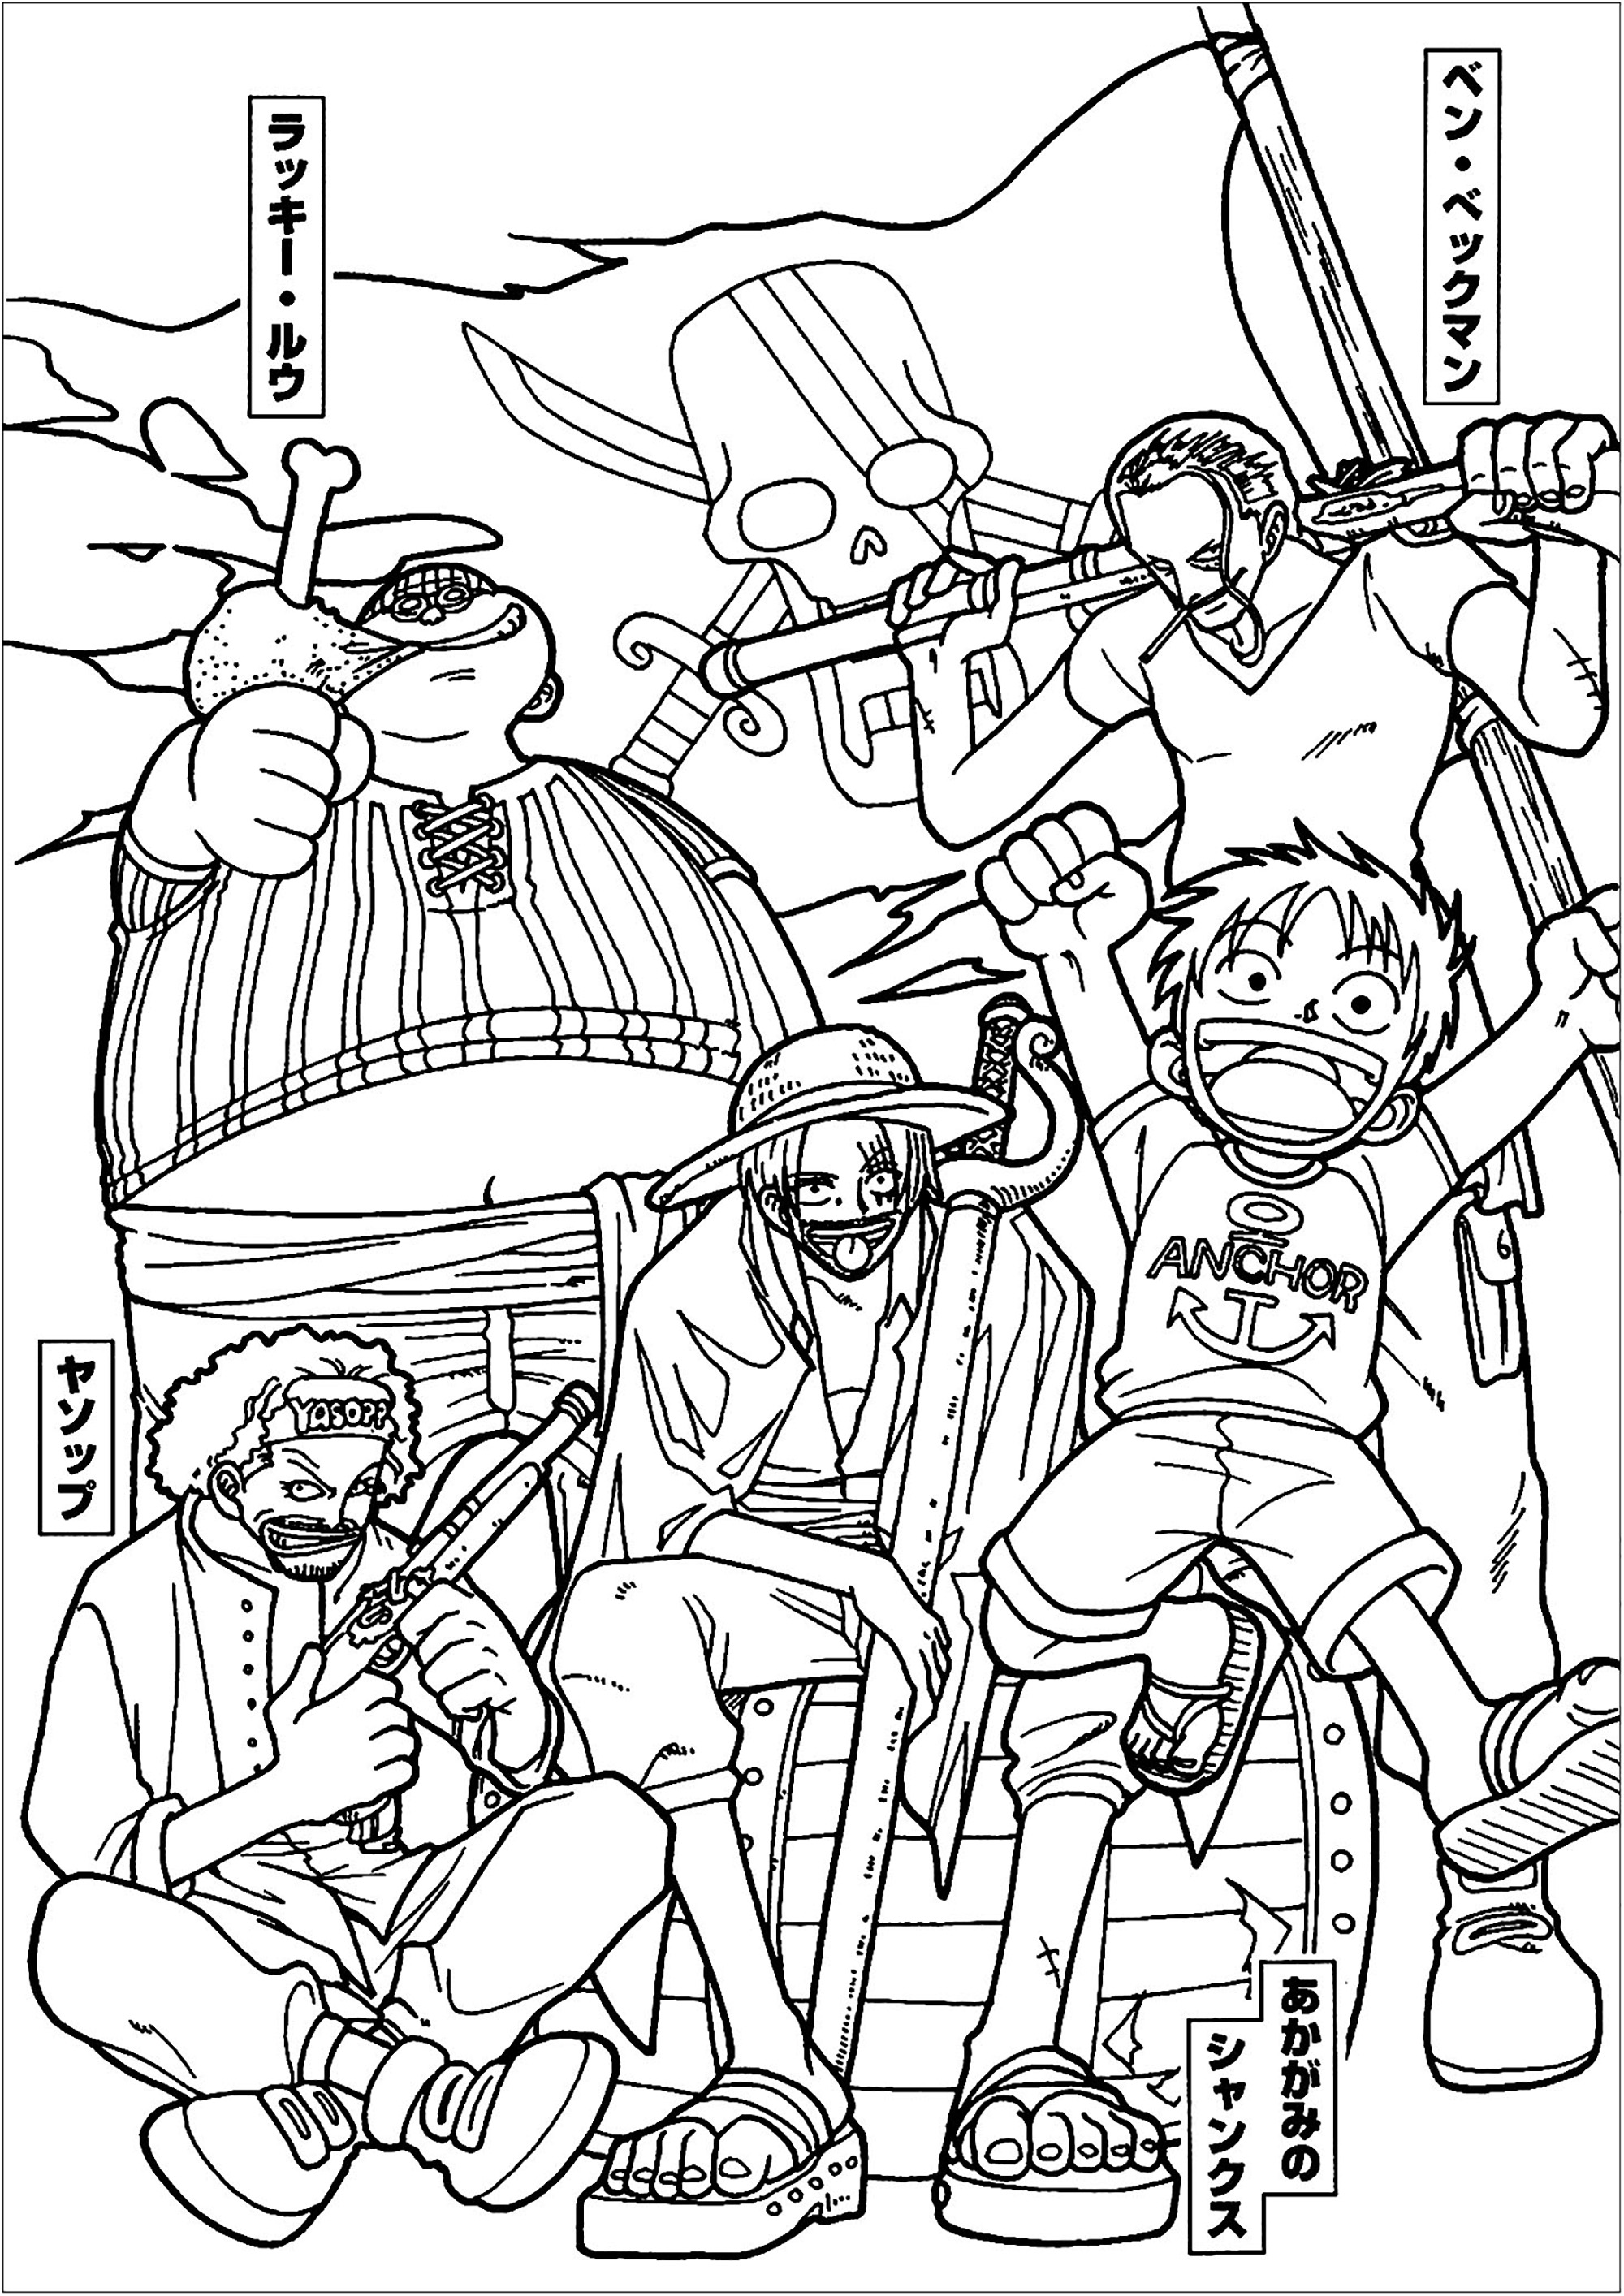 Colorear con los personajes de One piece. 'One Piece' es un manga y anime creado por Eiichiro Oda en 1997. Fue adaptado a una serie de acción real por Netflix en 2023.